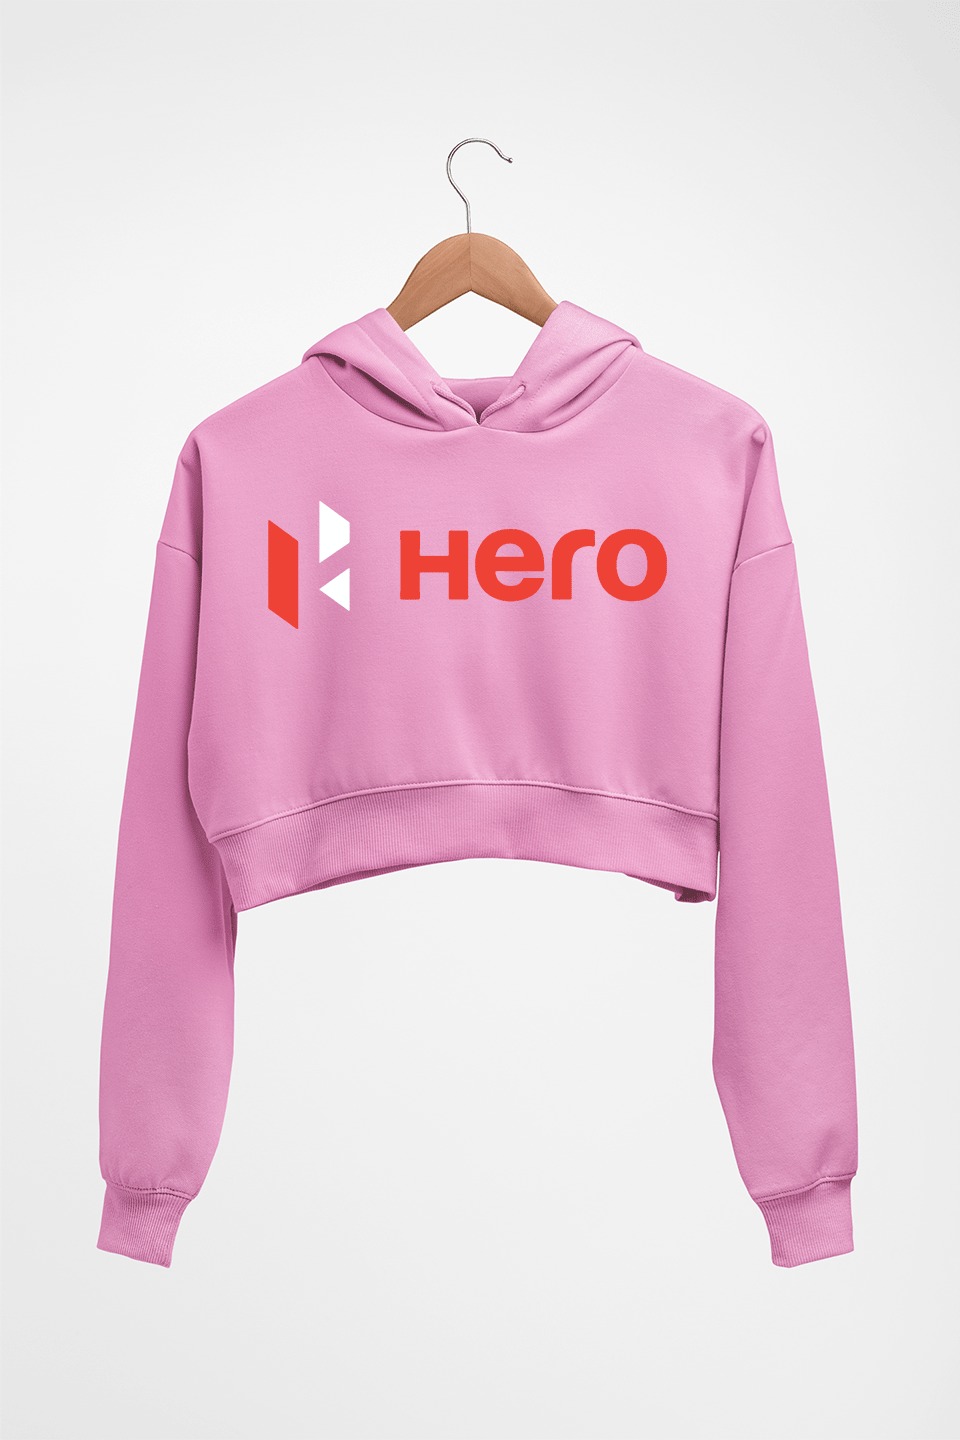 Hero MotoCorp Crop HOODIE FOR WOMEN